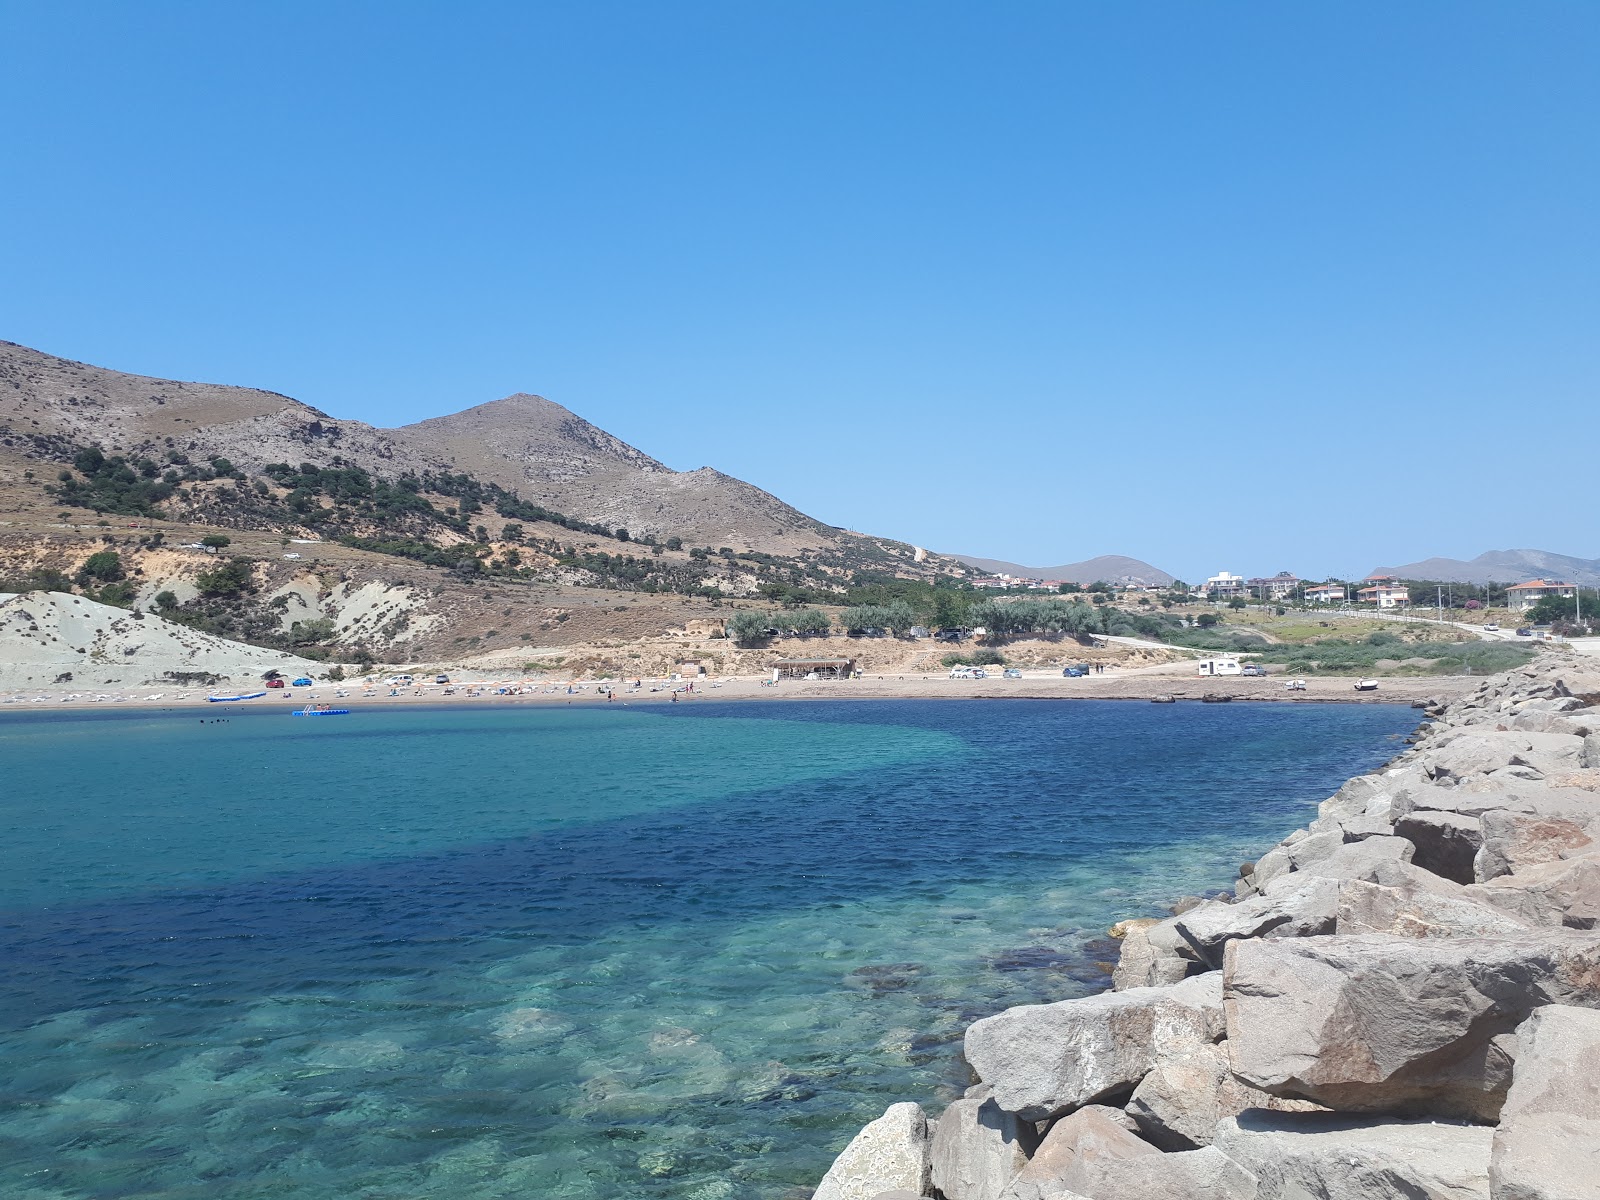 Zdjęcie Ugurlu beach - popularne miejsce wśród znawców relaksu